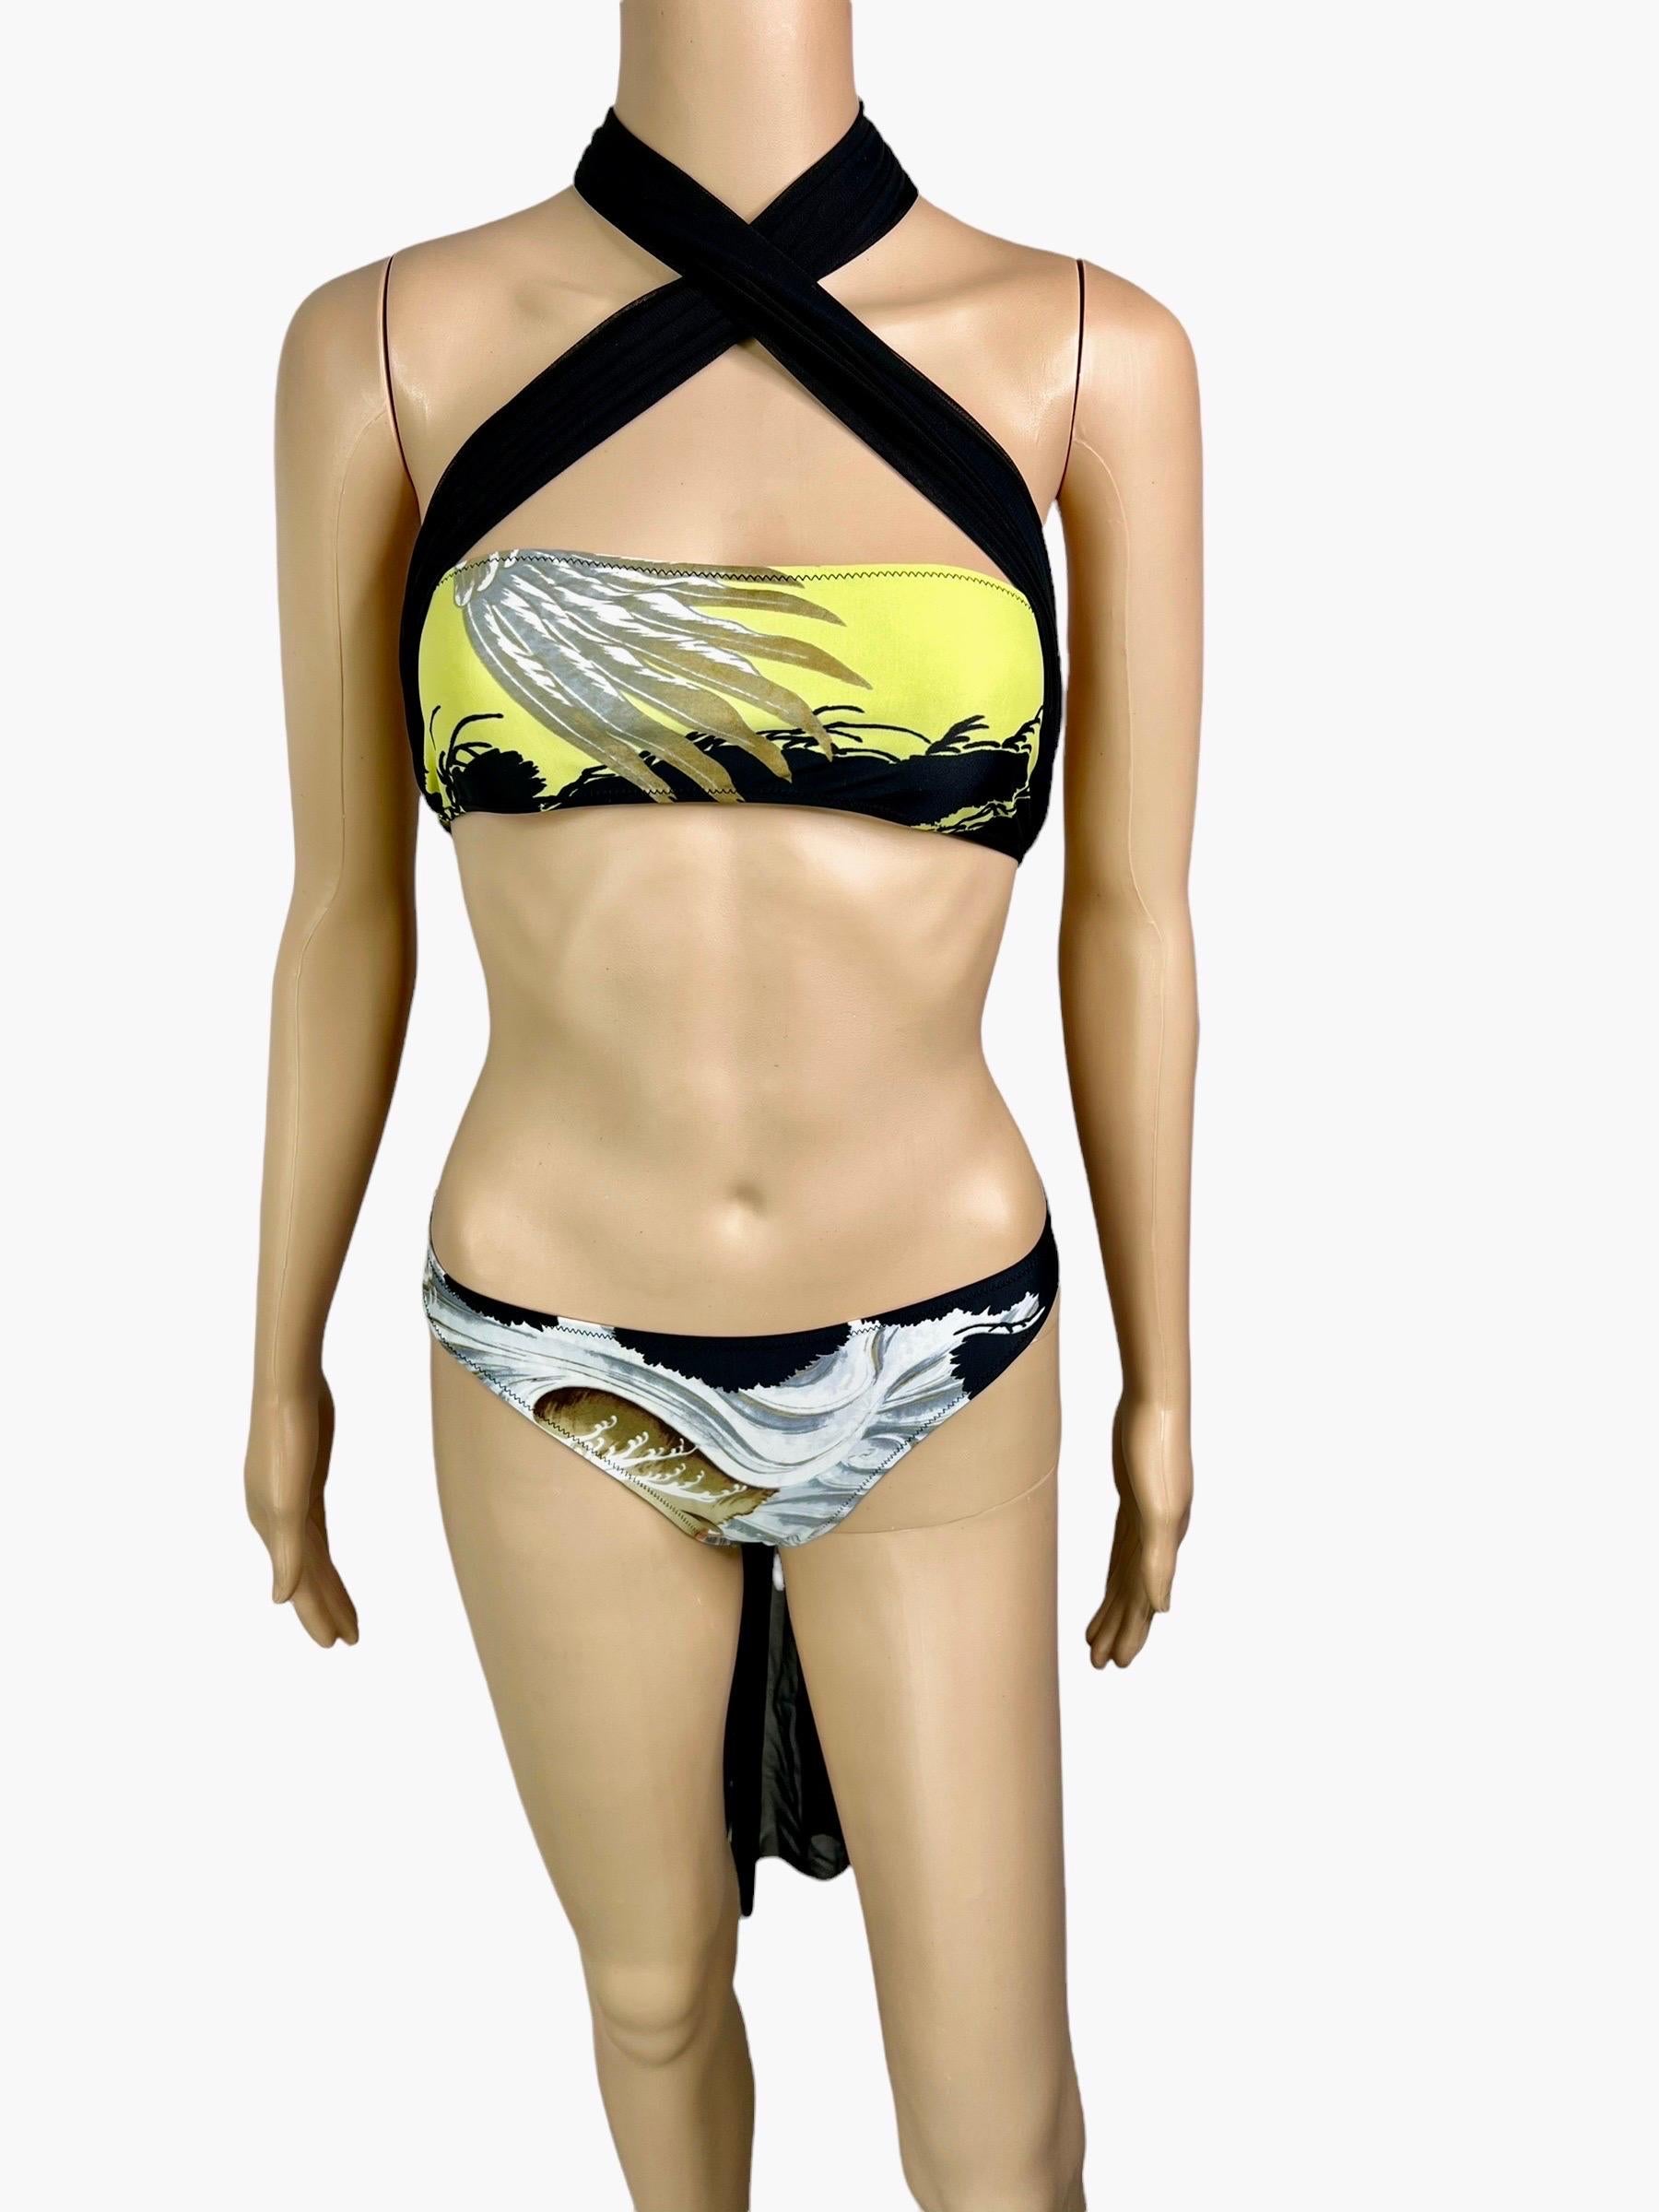 Beige Jean Paul Gaultier Soleil Eagle Tattoo Bikini Swimwear Swimsuit 2 Piece Set For Sale